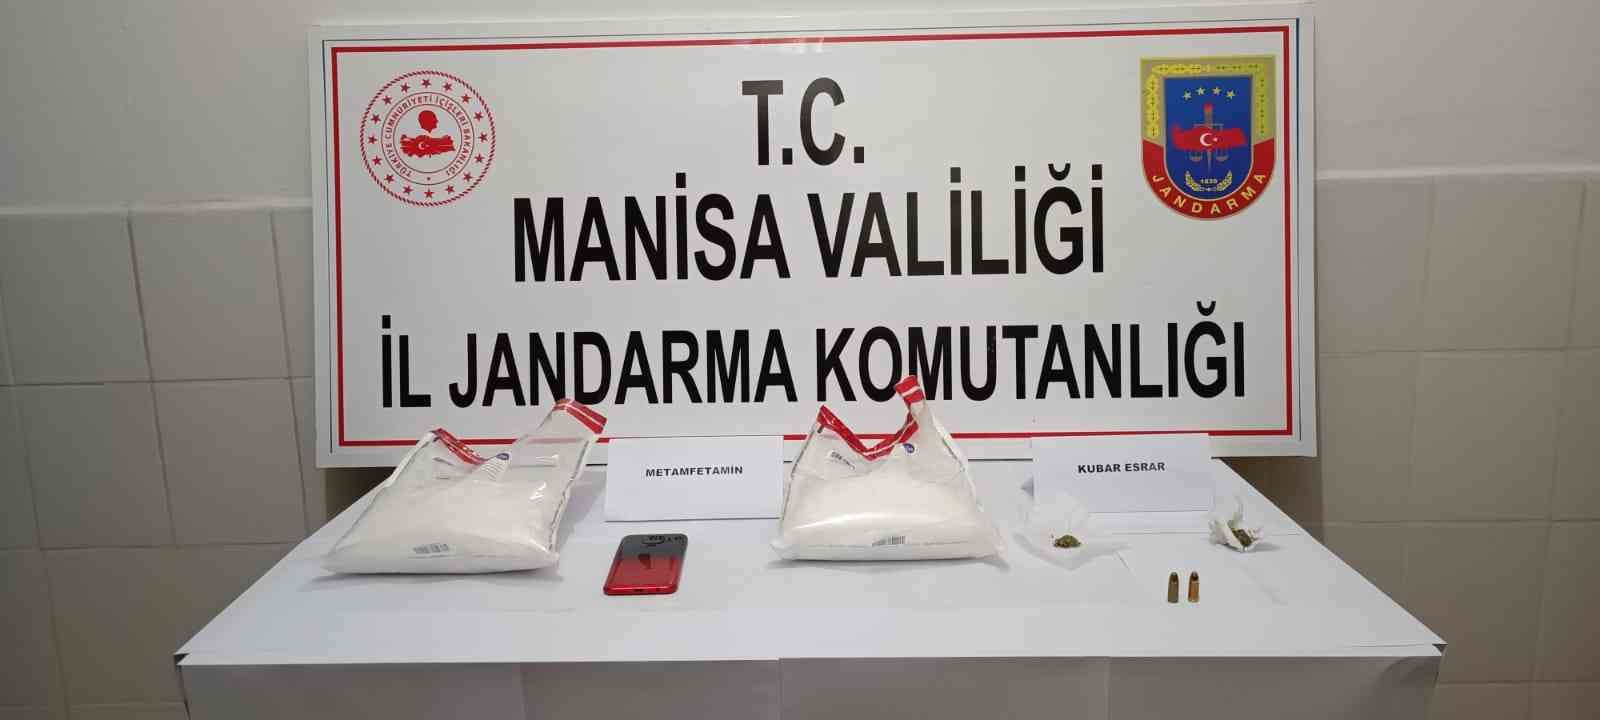 Manisa’da uyuşturucu operasyonu: 1,5 kilogram metamfetamin yakalandı #manisa